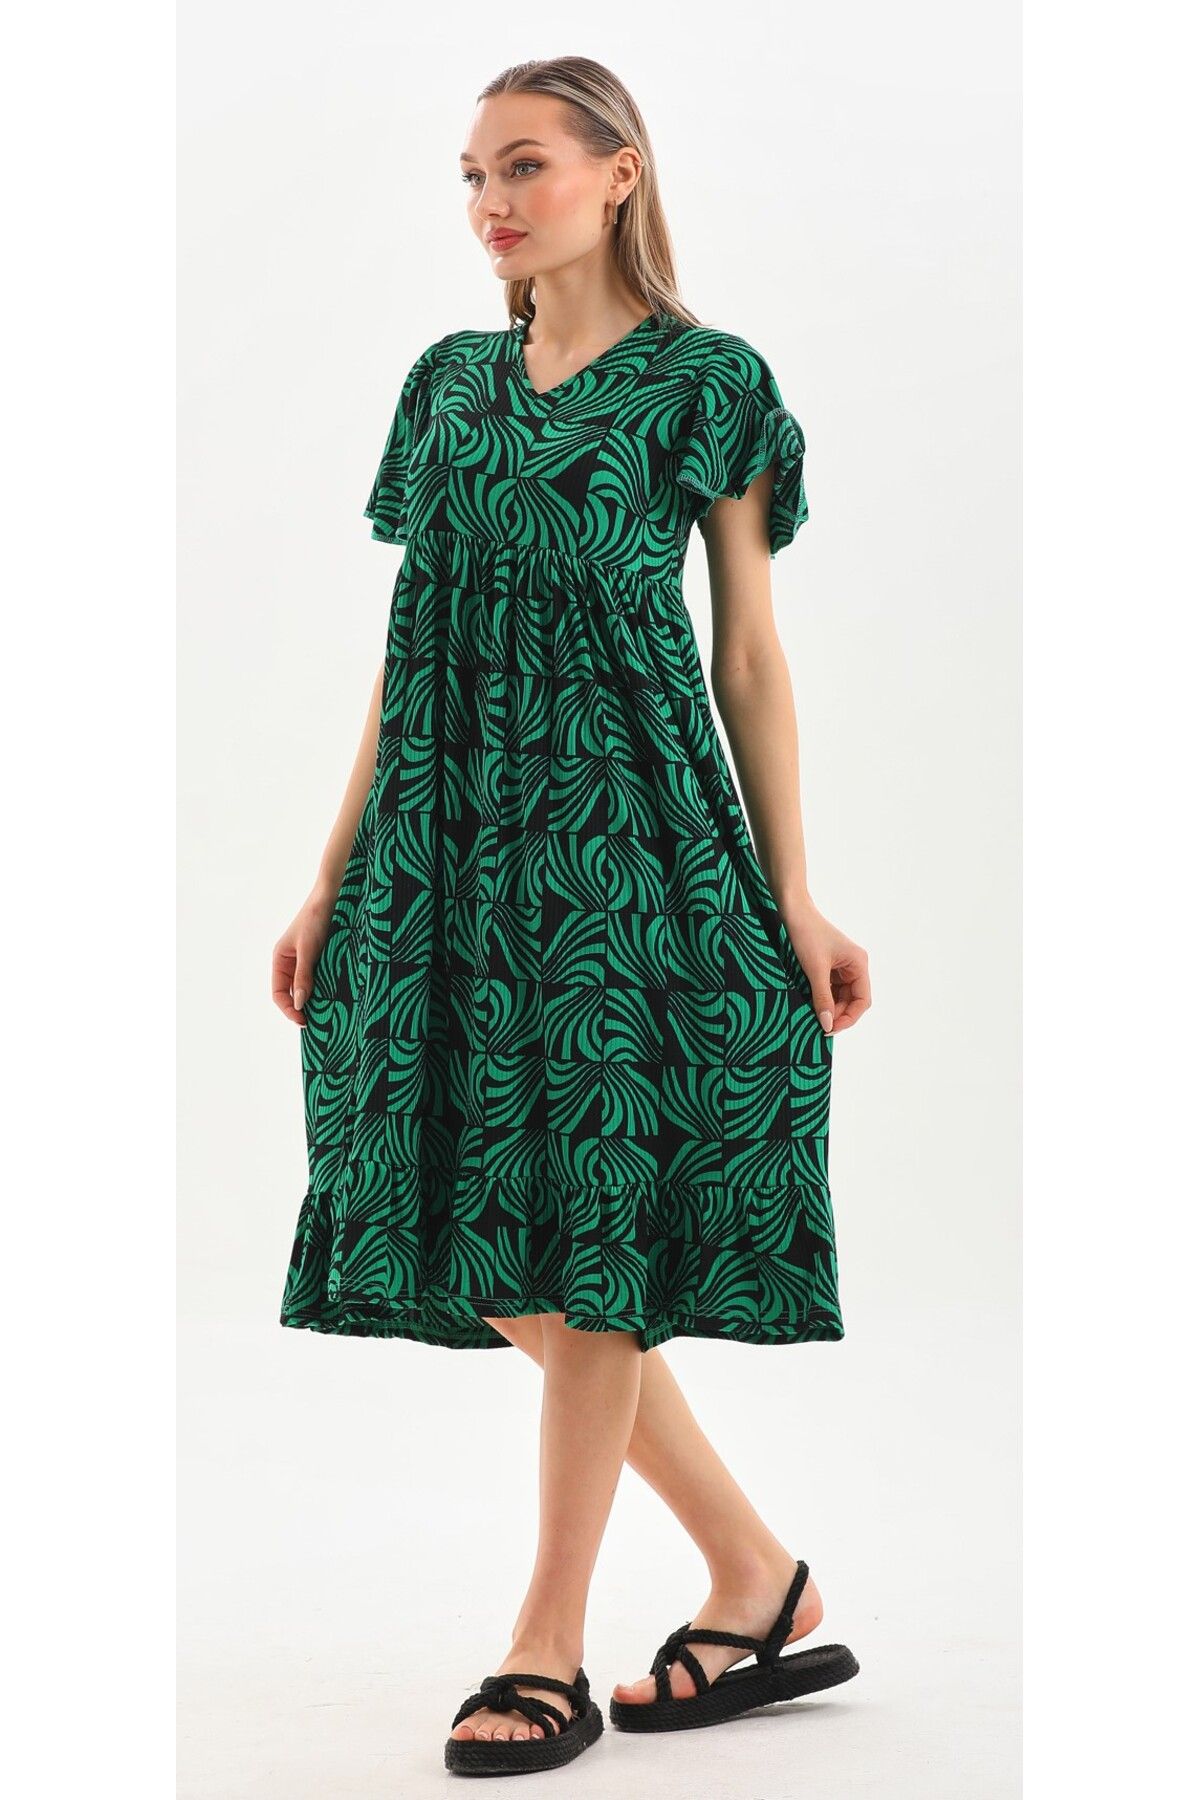 DEVRİMAY TEKSTİL Kadın Elbise Yazlık Desenli Yeşil Siyah Kelebek Kol